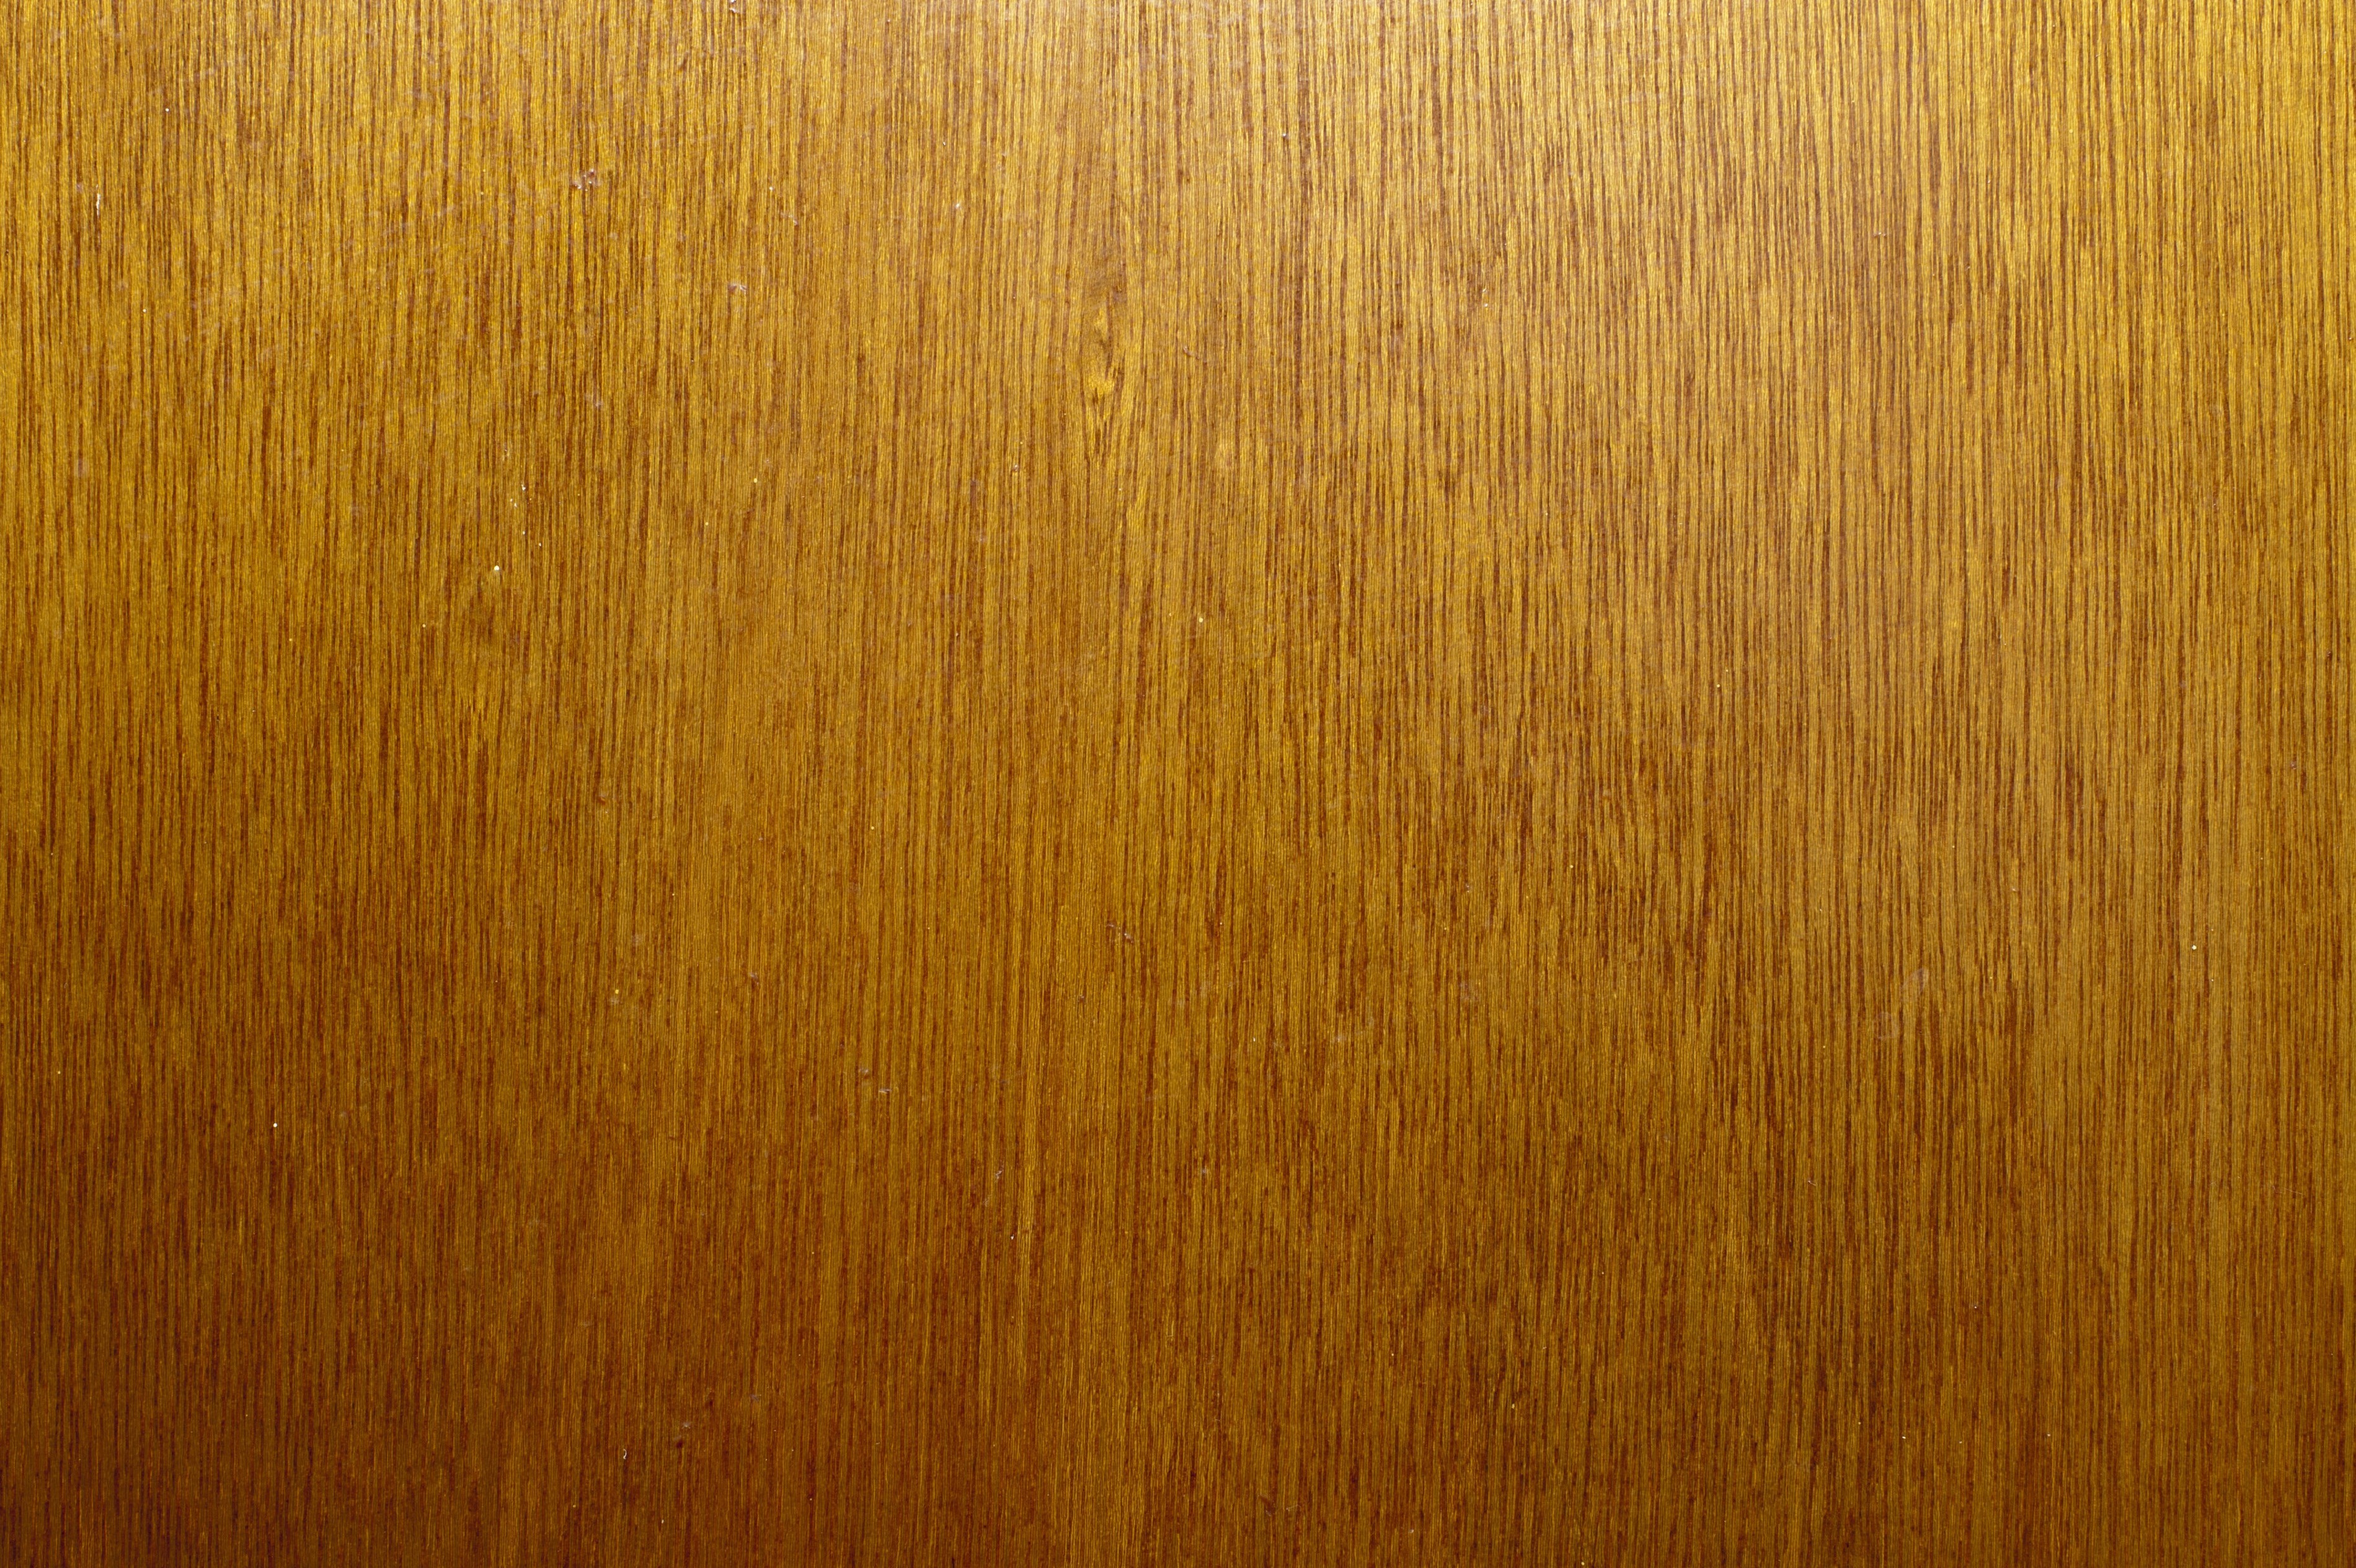 Wallpaper Wood Grain Pack